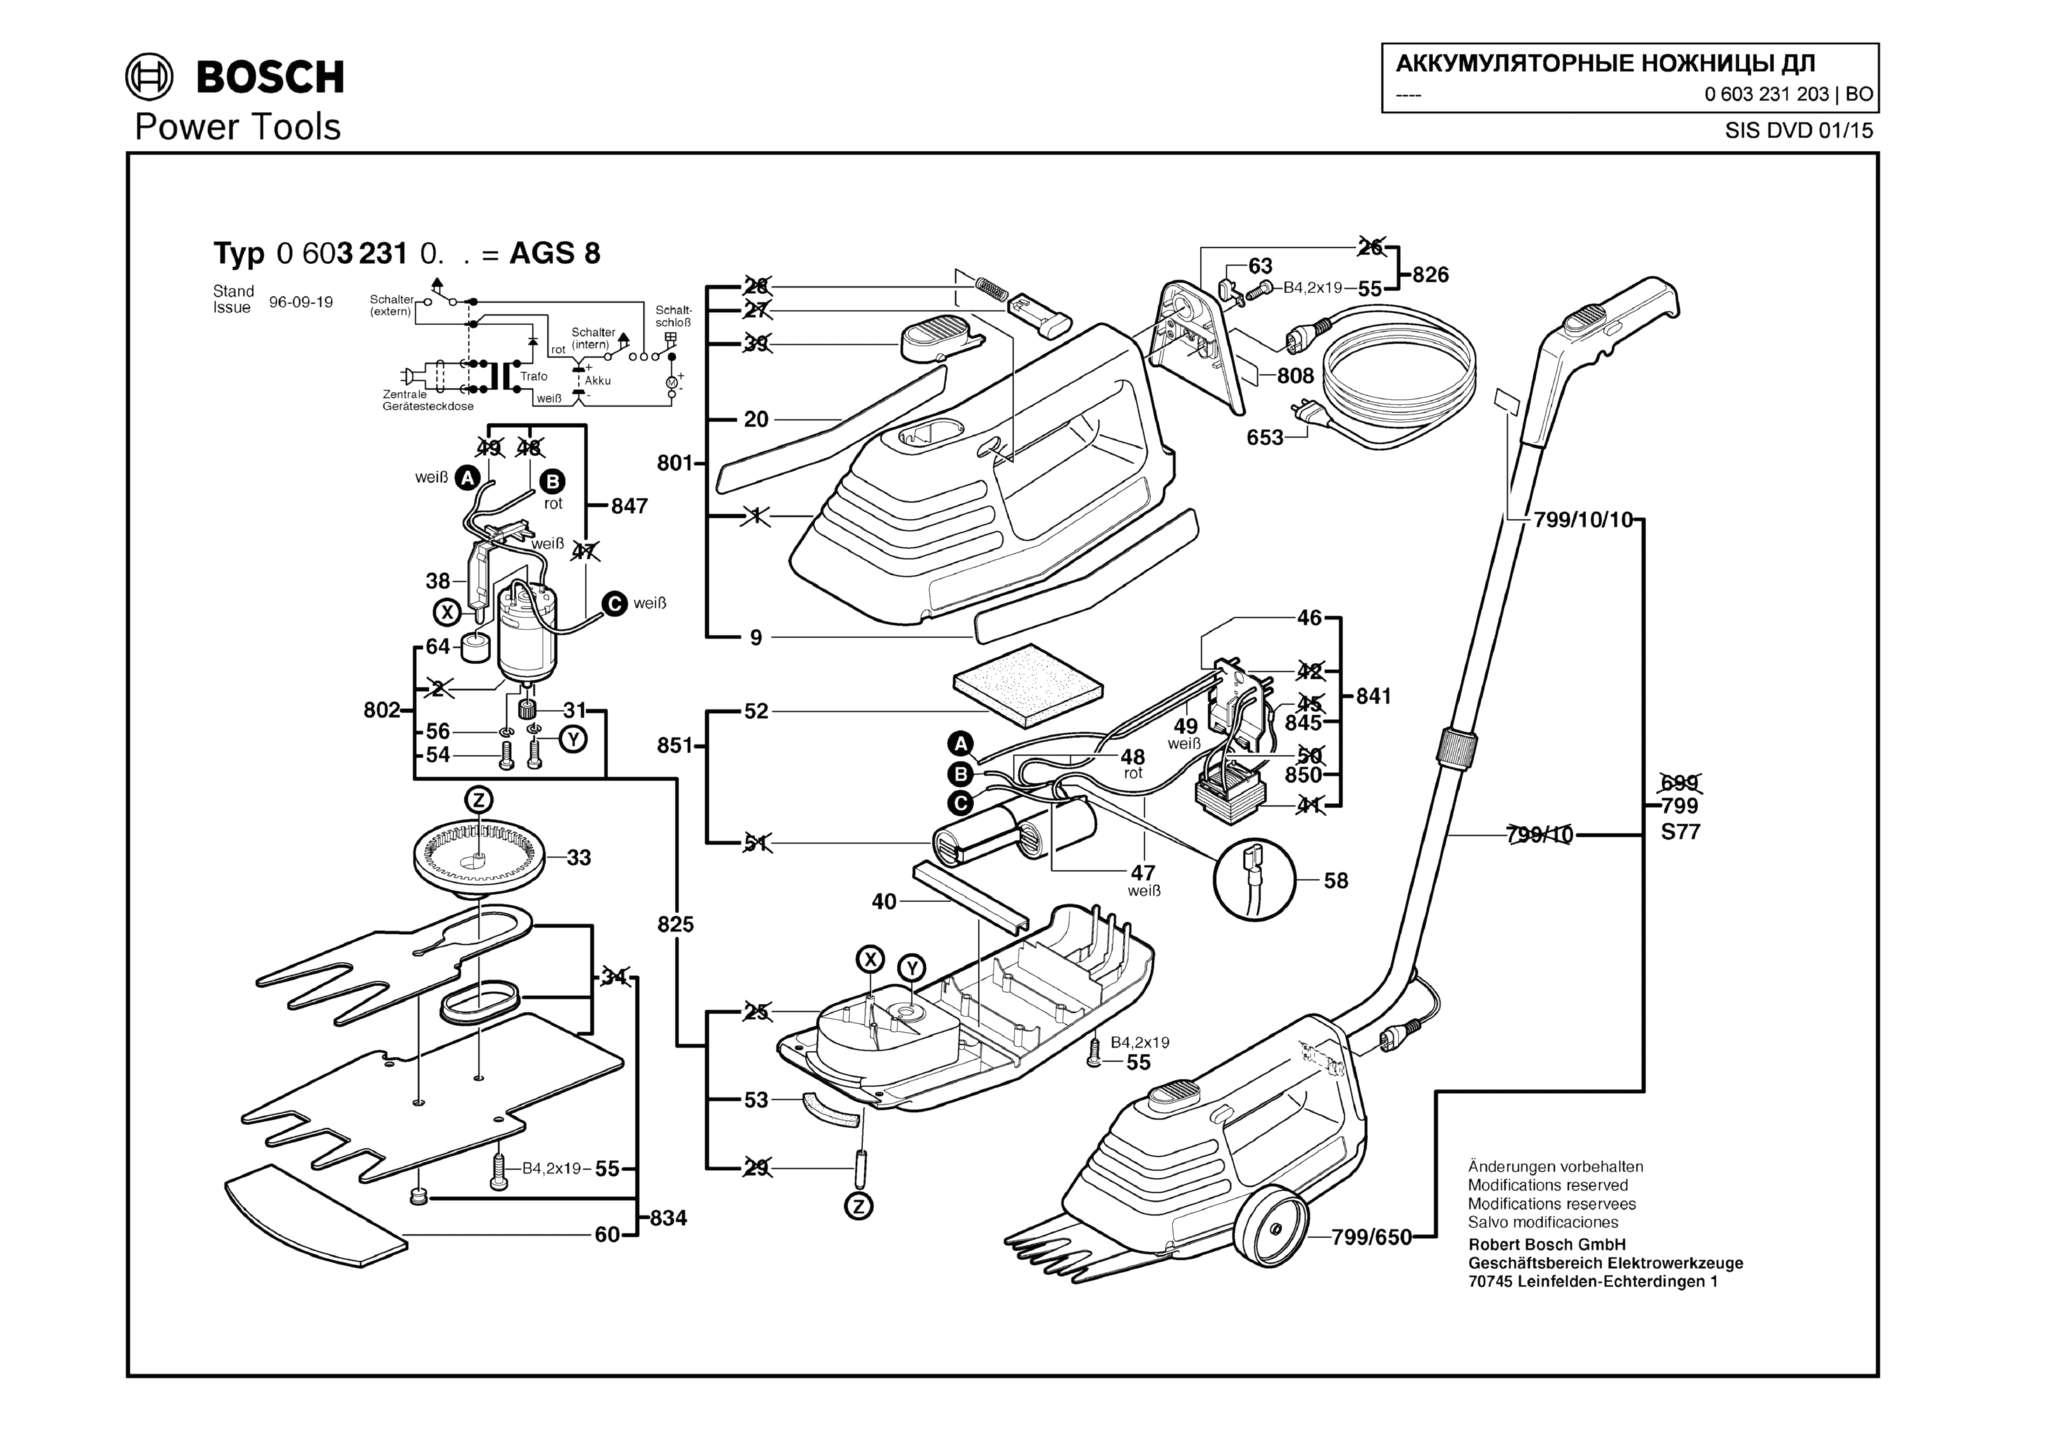 Запчасти, схема и деталировка Bosch AGS 8 (ТИП 0603231203)